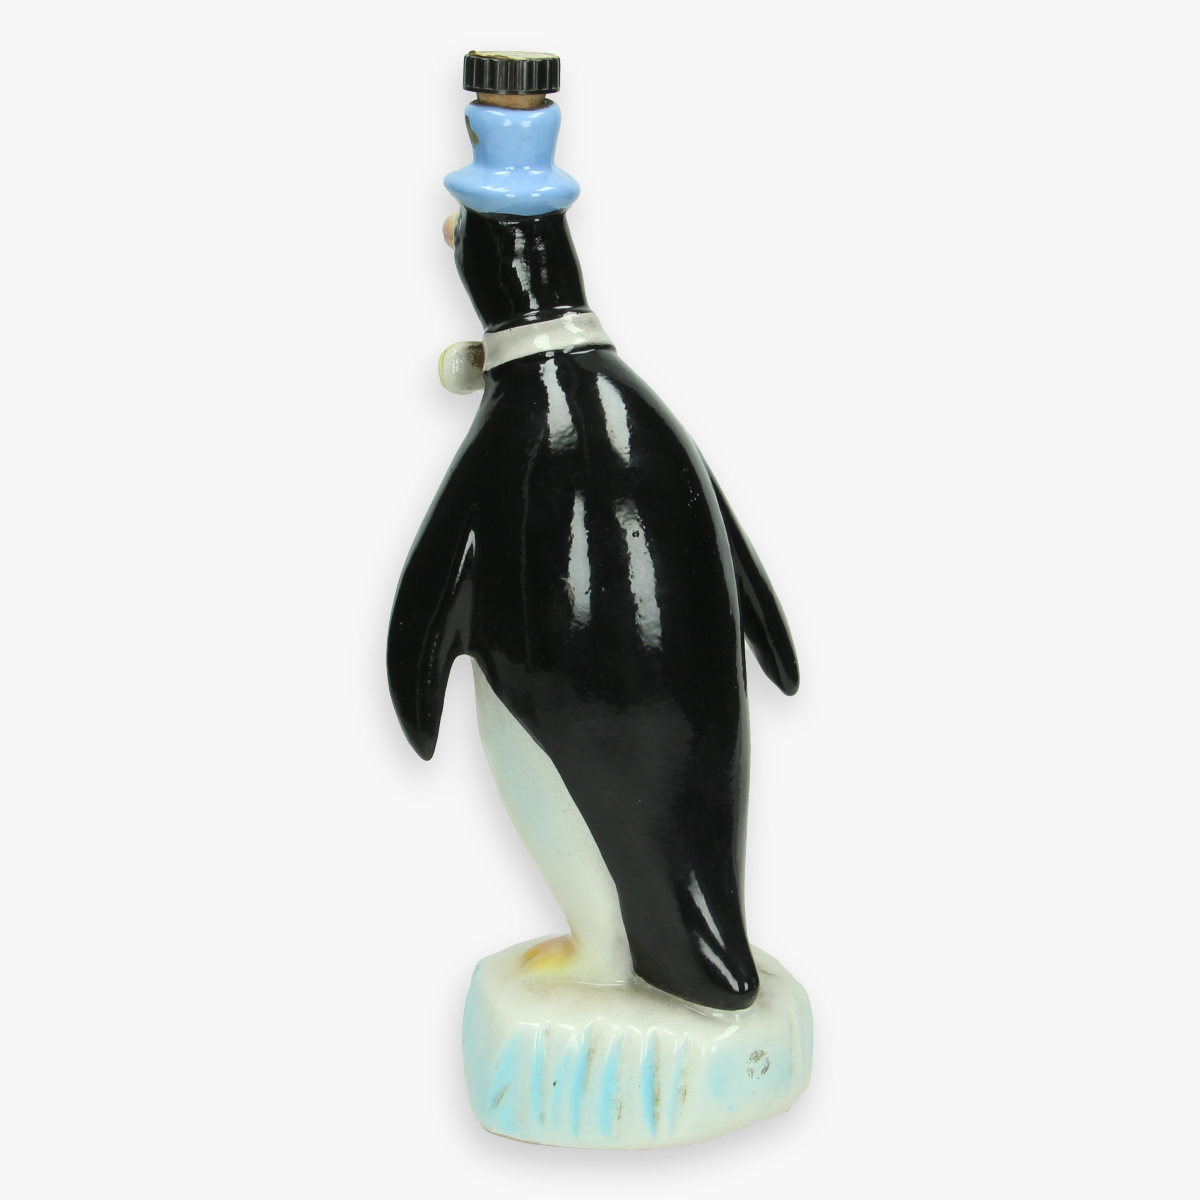 Afbeeldingen van fles in vorm van pinguin 